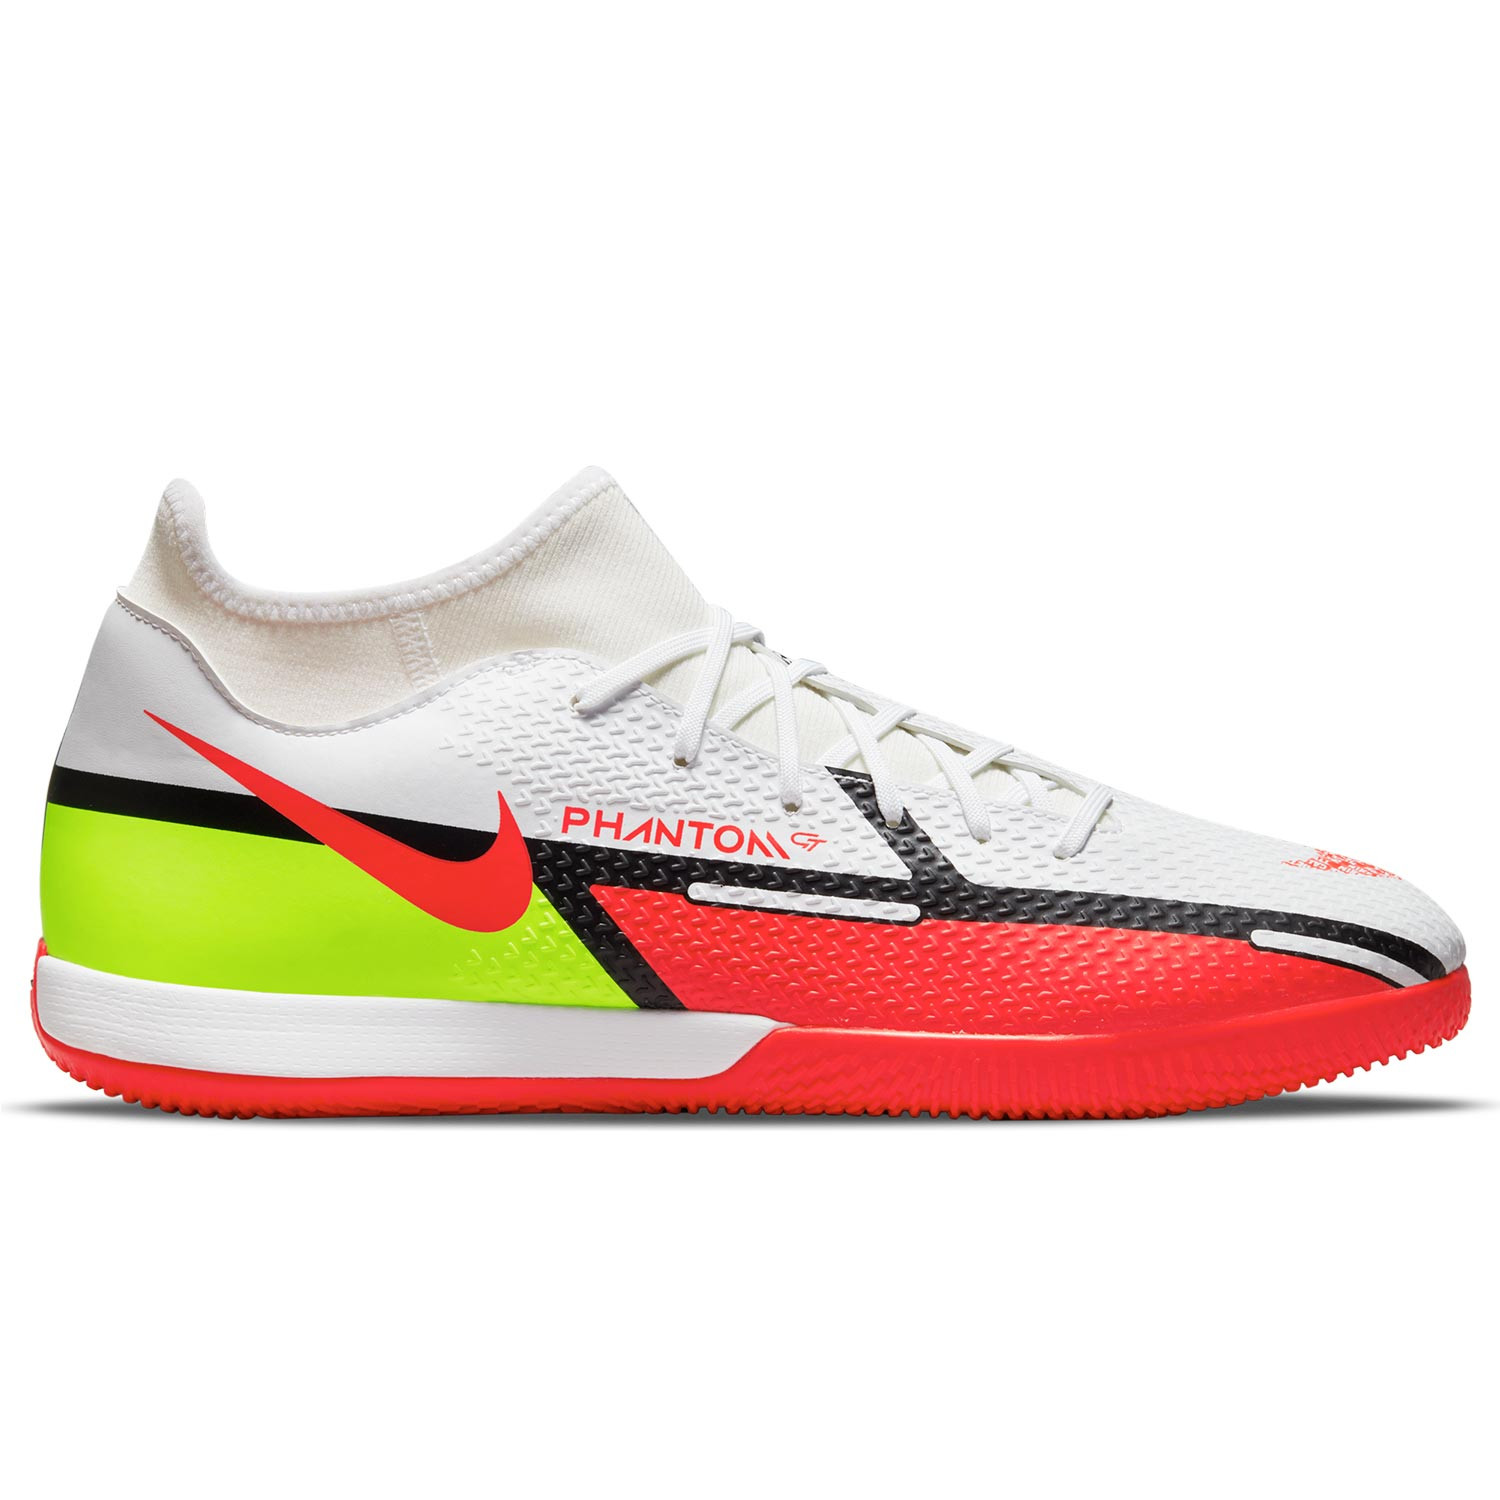 Nike Phantom DF IC blancas rojas | futbolmania